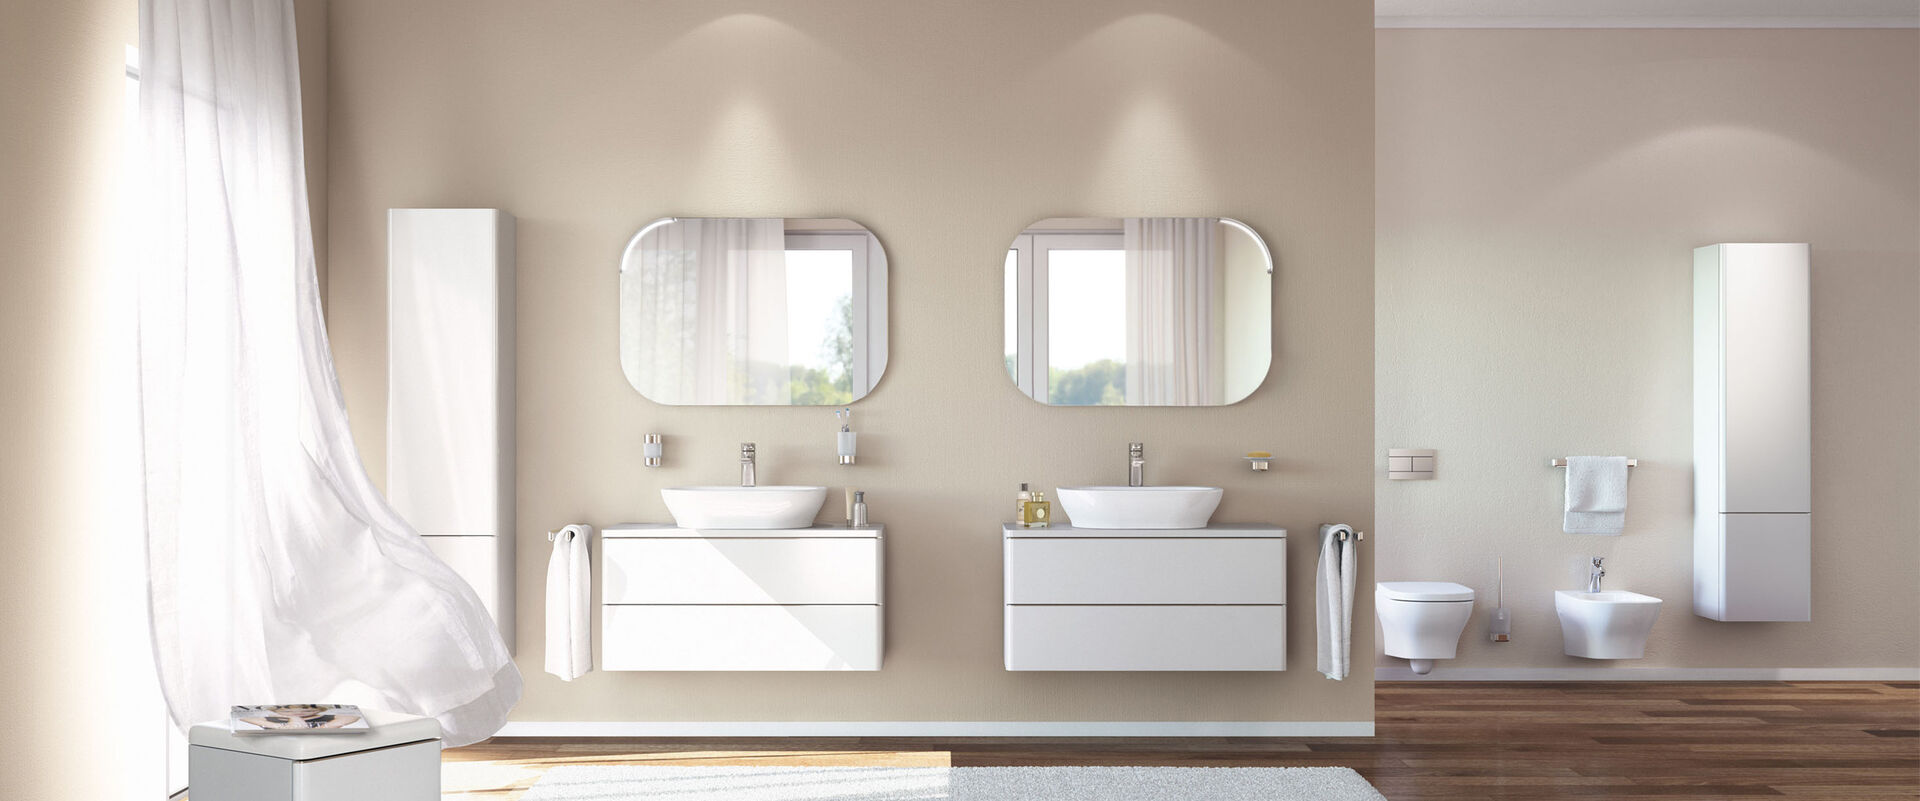 Badezimmermilieubild weiss. Zwei separate Aufsatzwaschbecken auf weissen Badmöbeln und Spiegel. Im hintergrund Toilette, Bidet und Hochschrank. Softmood Ideal Standard.